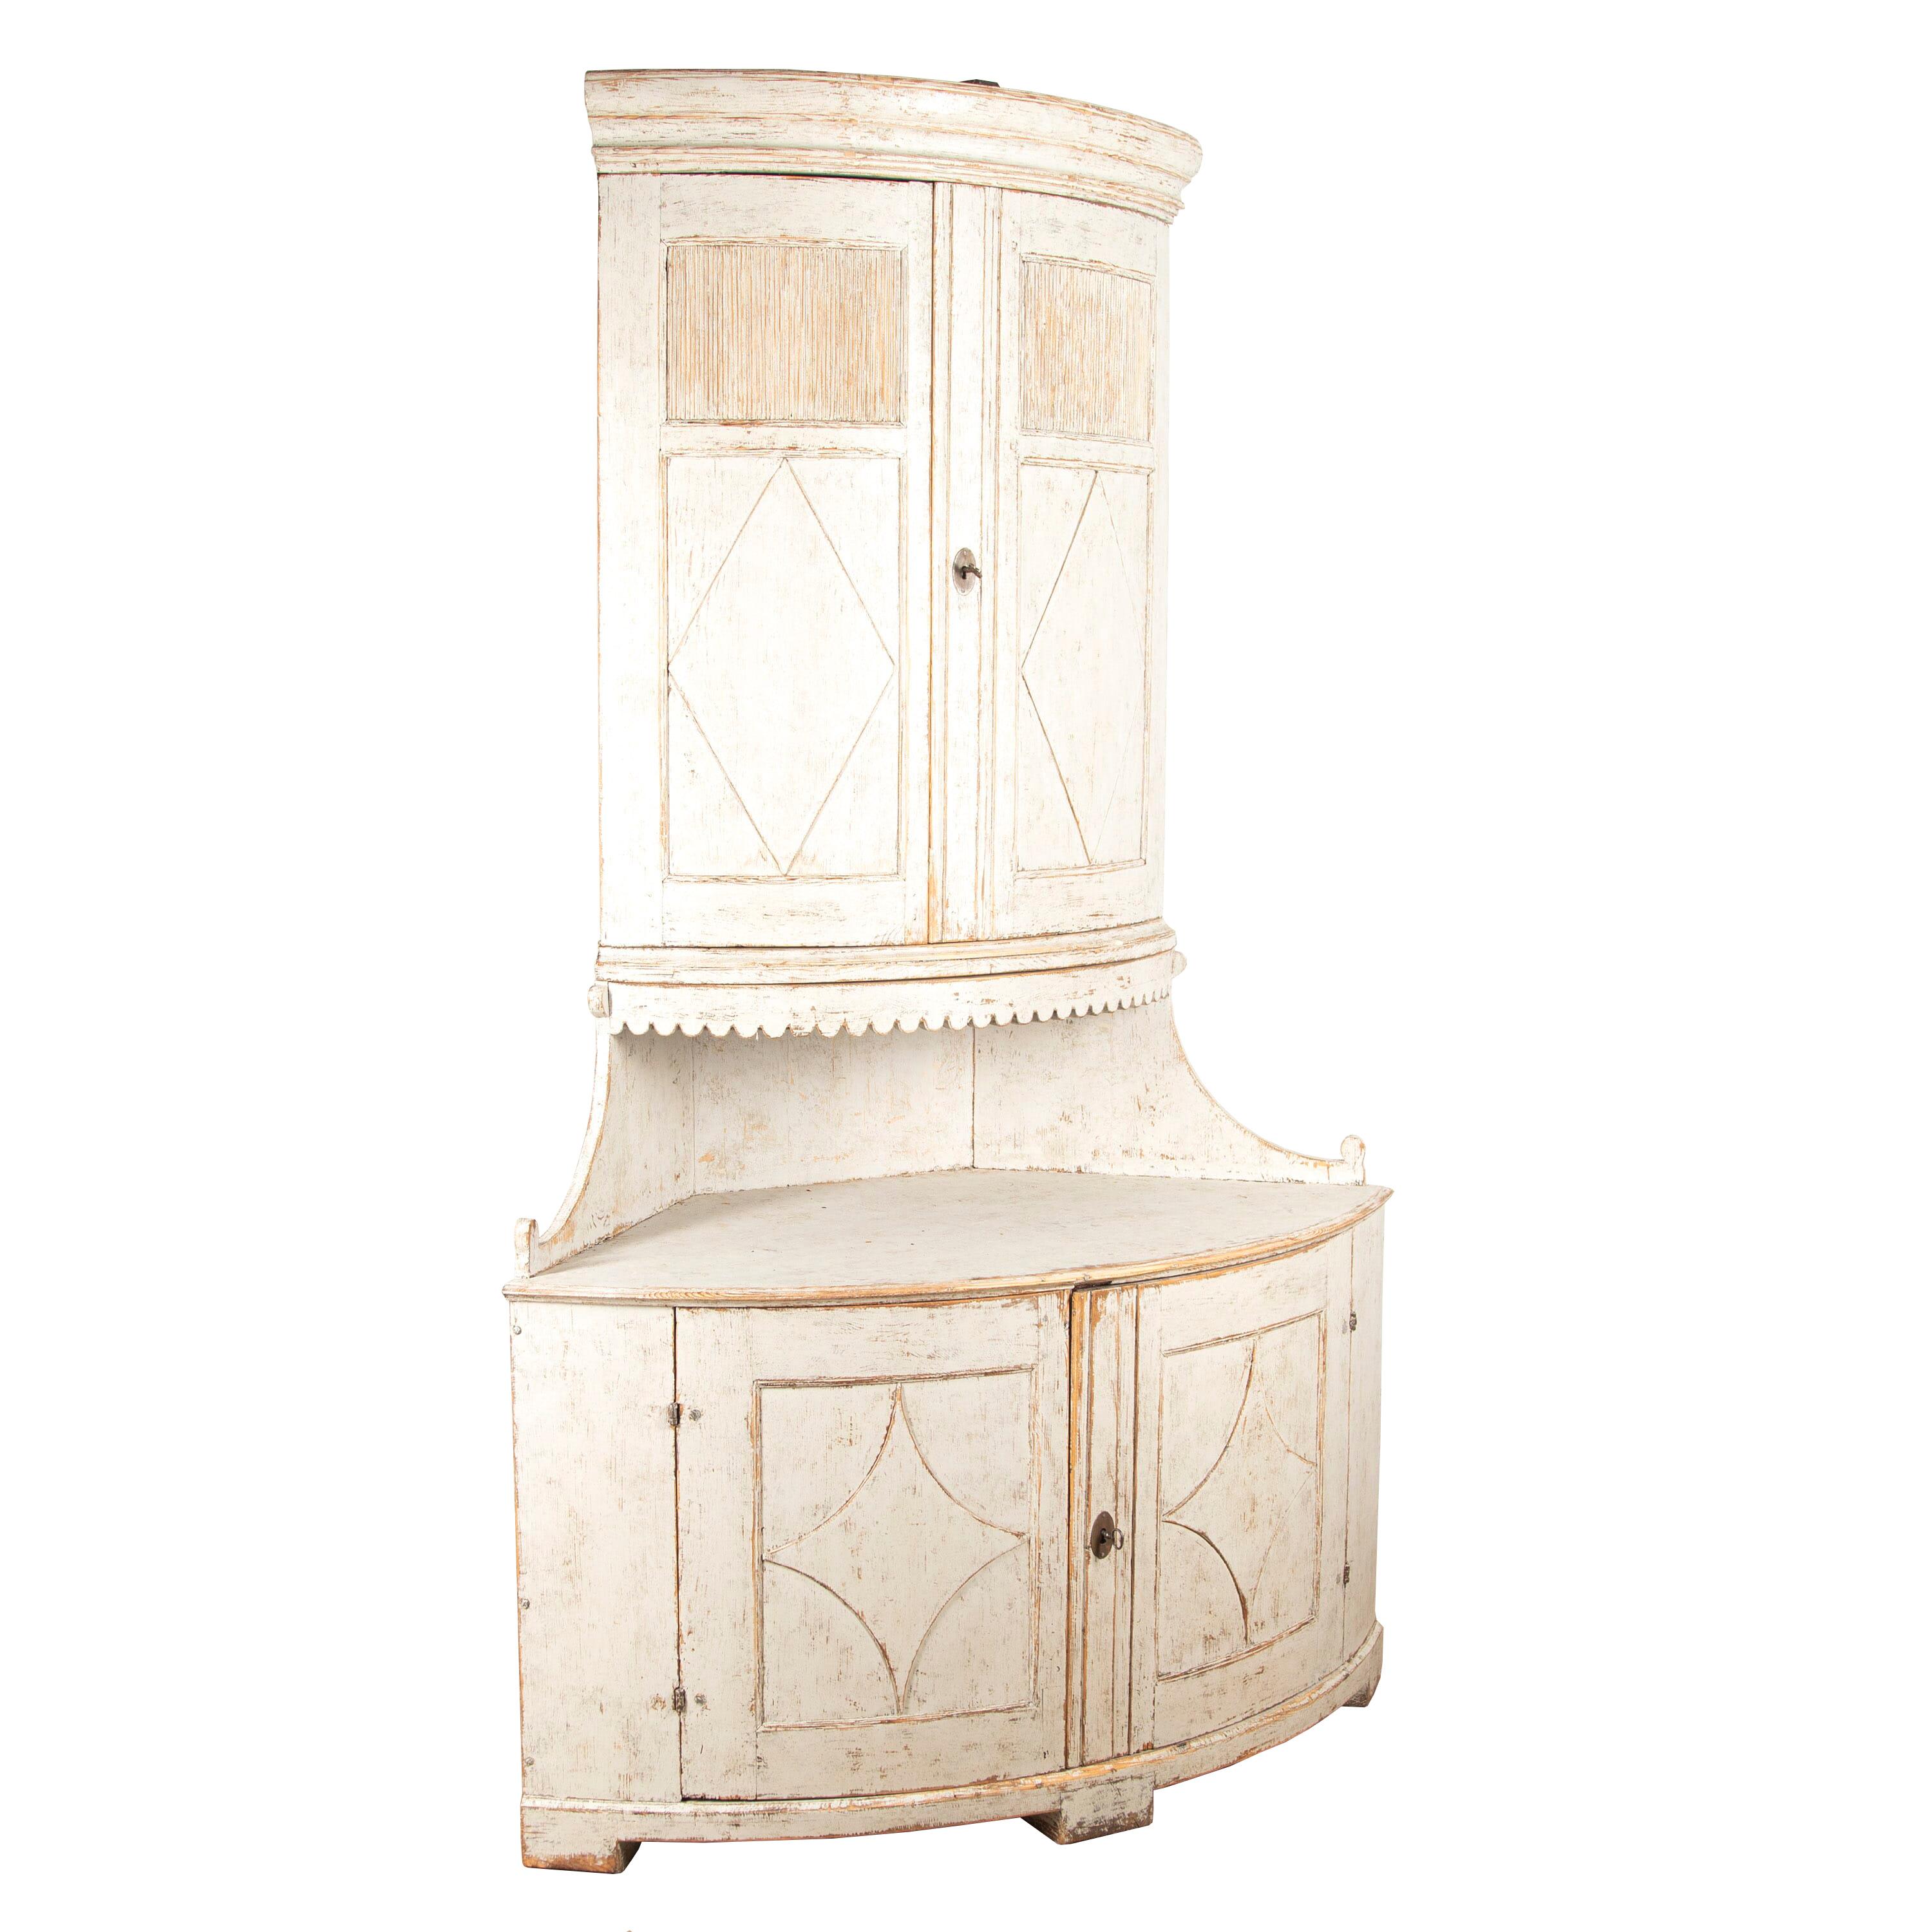 Exceptionnel meuble d'angle du XVIIIe siècle. 
La partie supérieure présente un fronton simplement sculpté qui soutient deux décorations en forme de diamant merveilleusement sculptées sur les portes. 
Dans la partie supérieure, on trouve deux